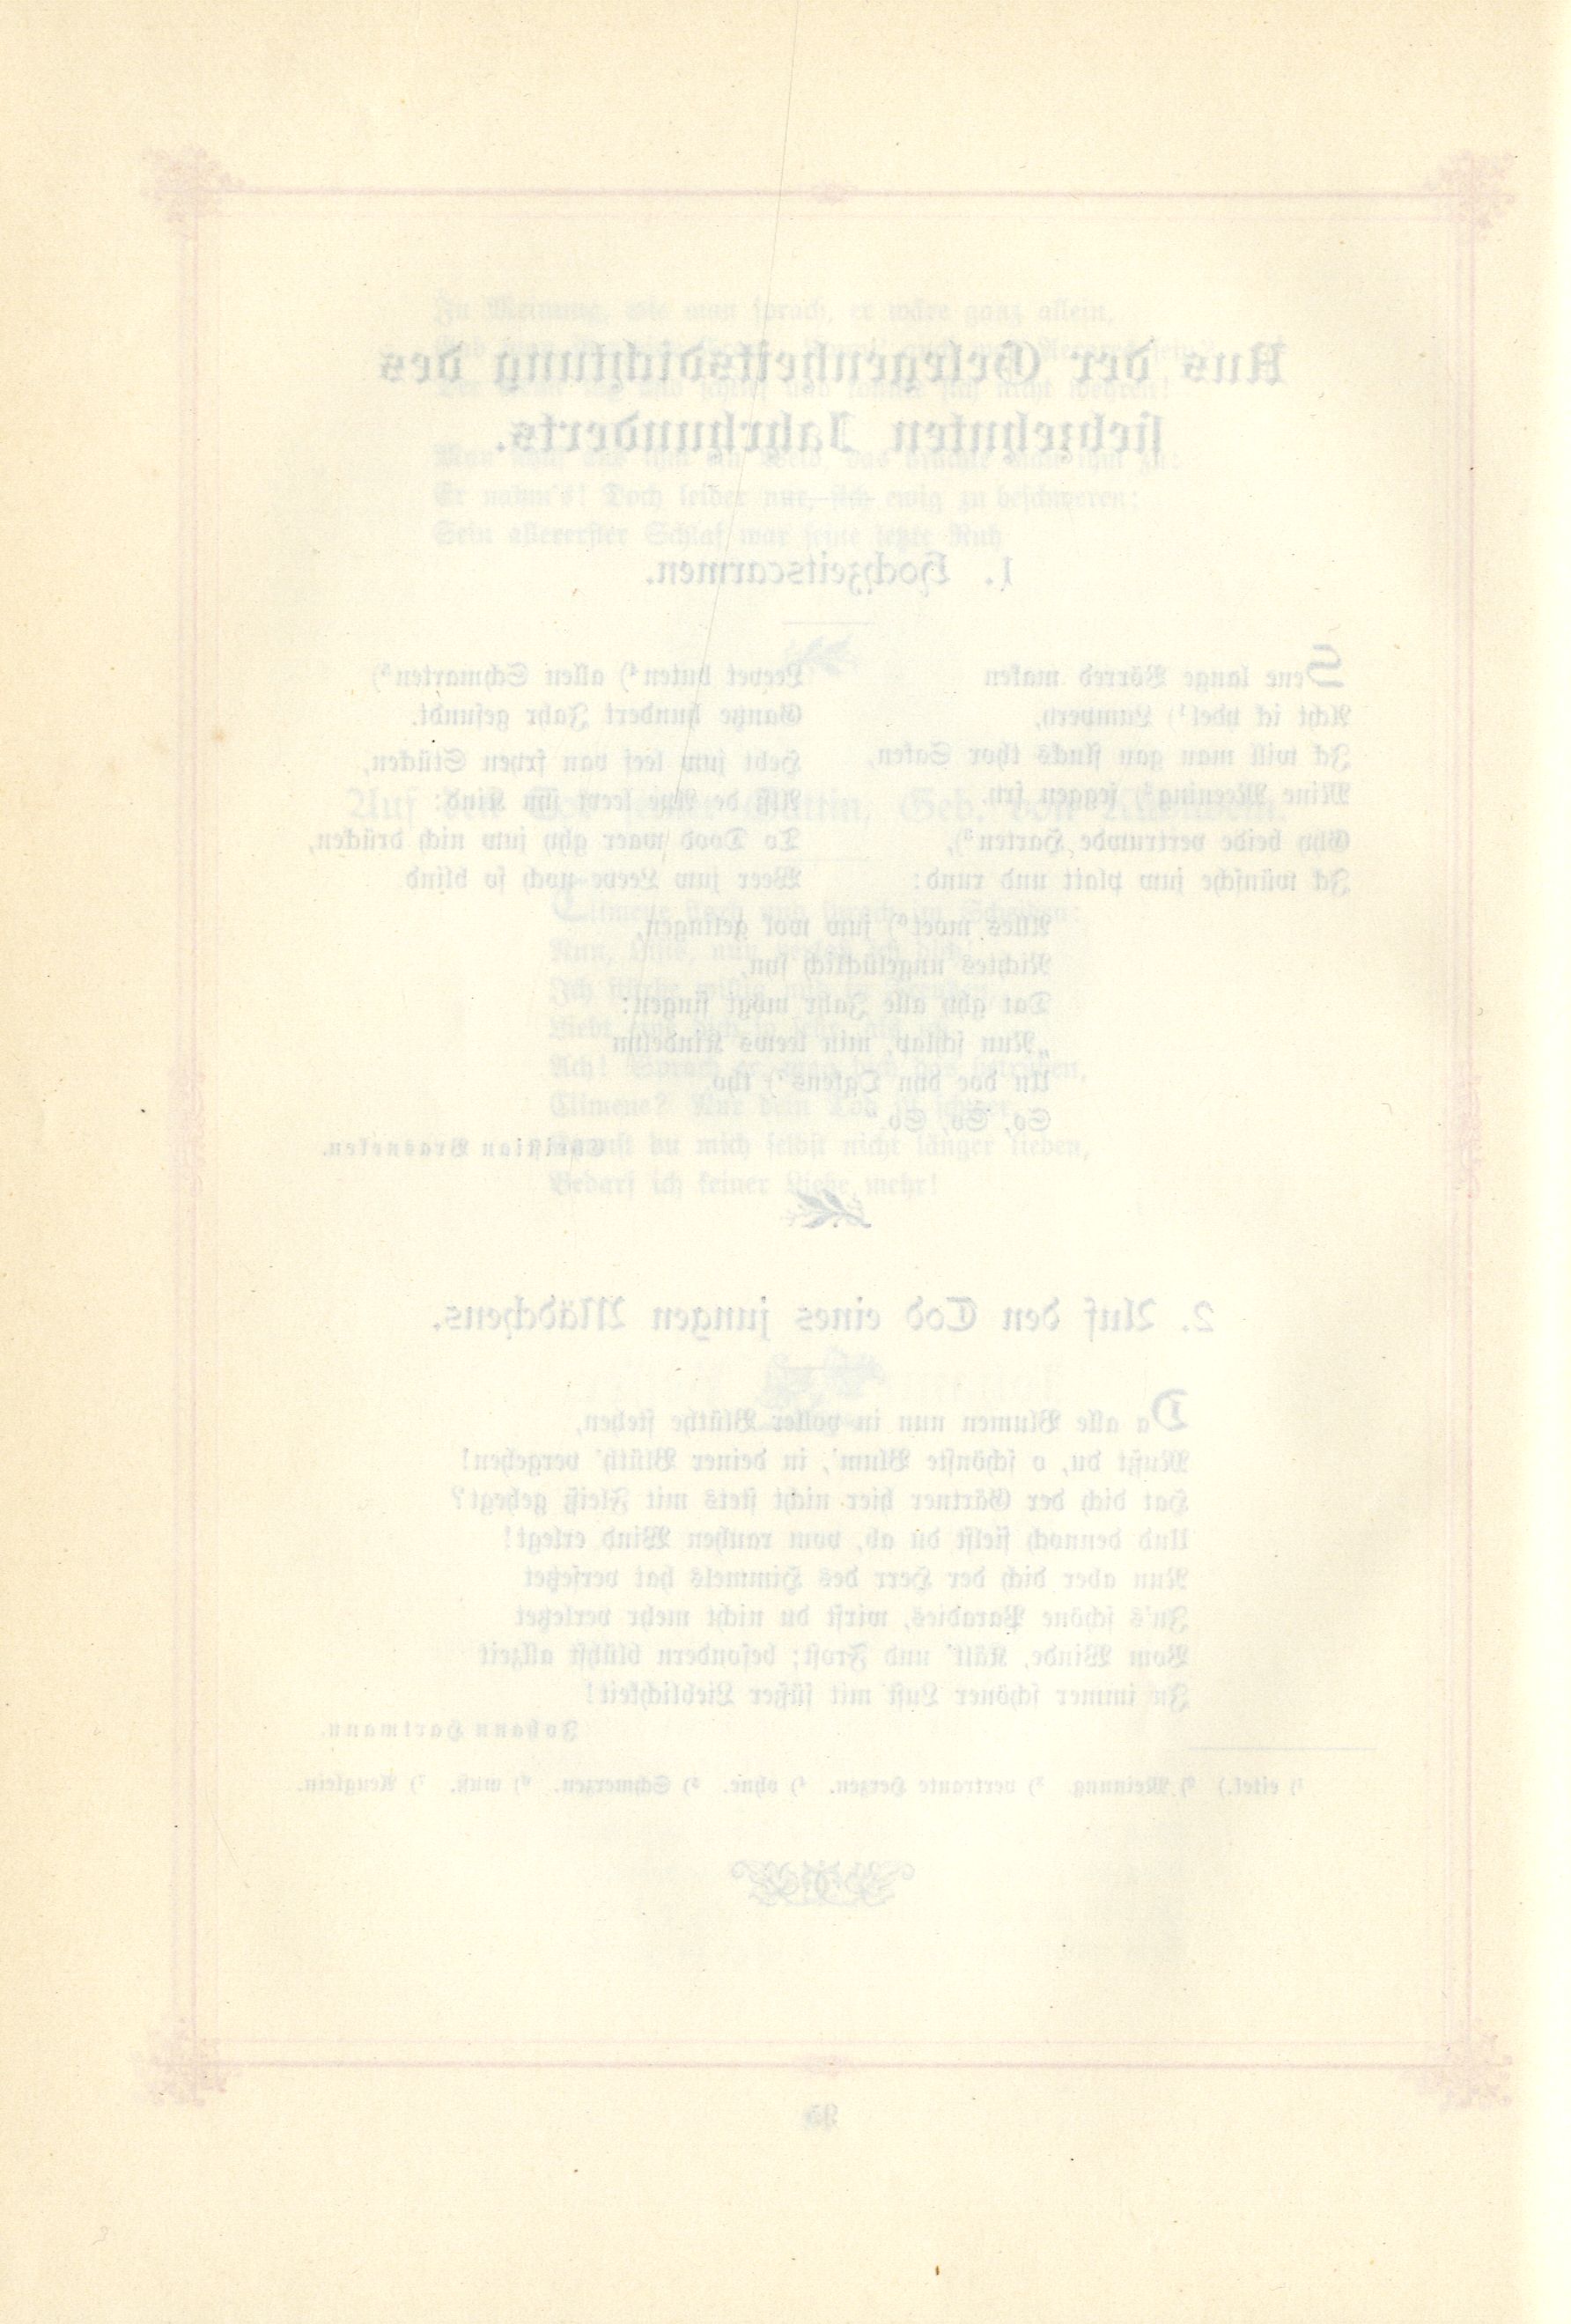 Das Baltische Dichterbuch (1895) | 142. (96) Main body of text